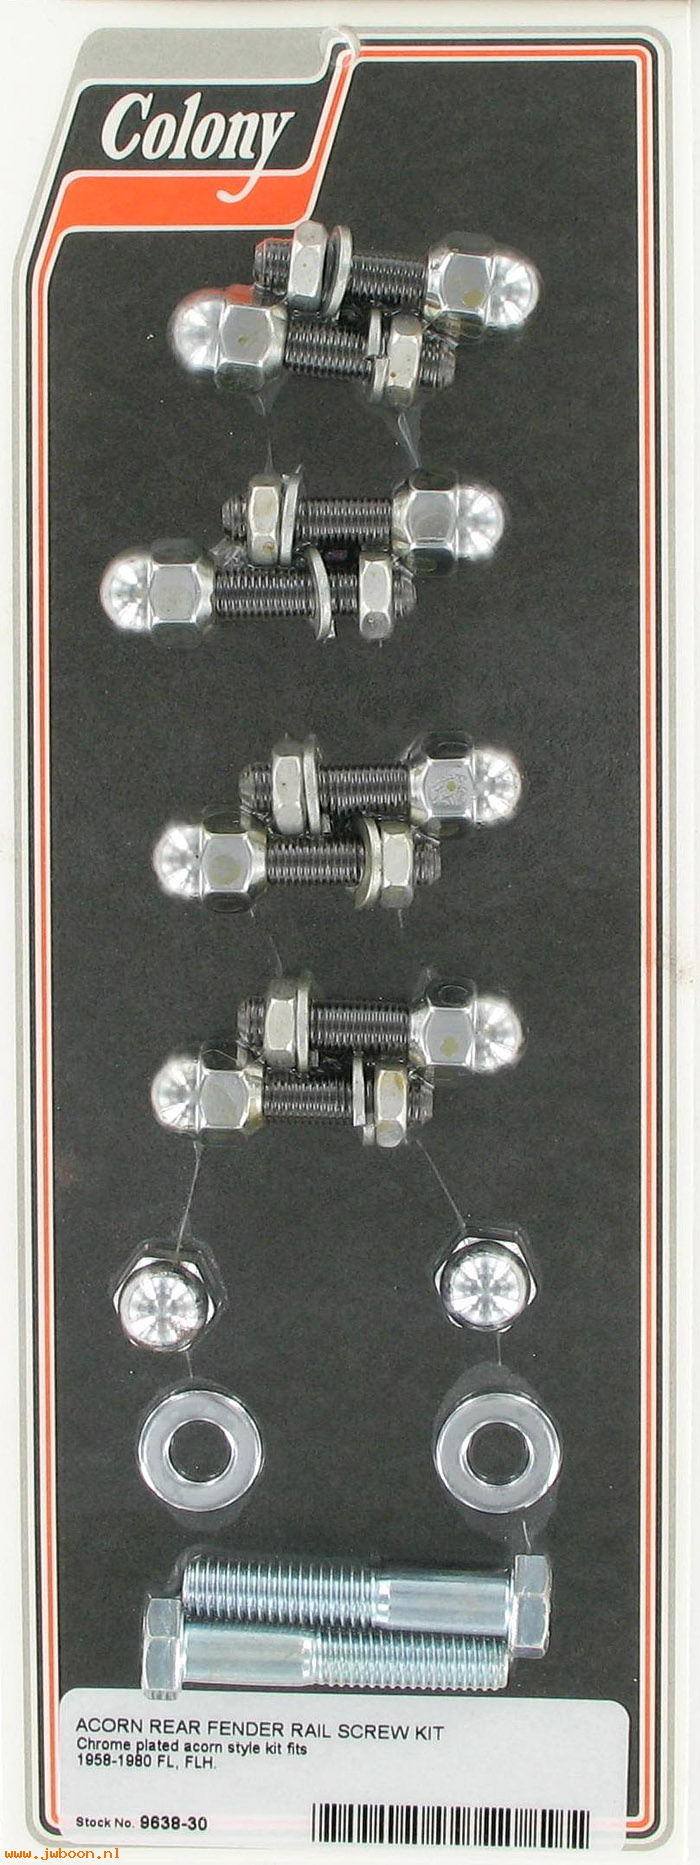 C 9638-30 (): Rear fender rail screw kit, acorn - FL '58-'80, in stock Colony